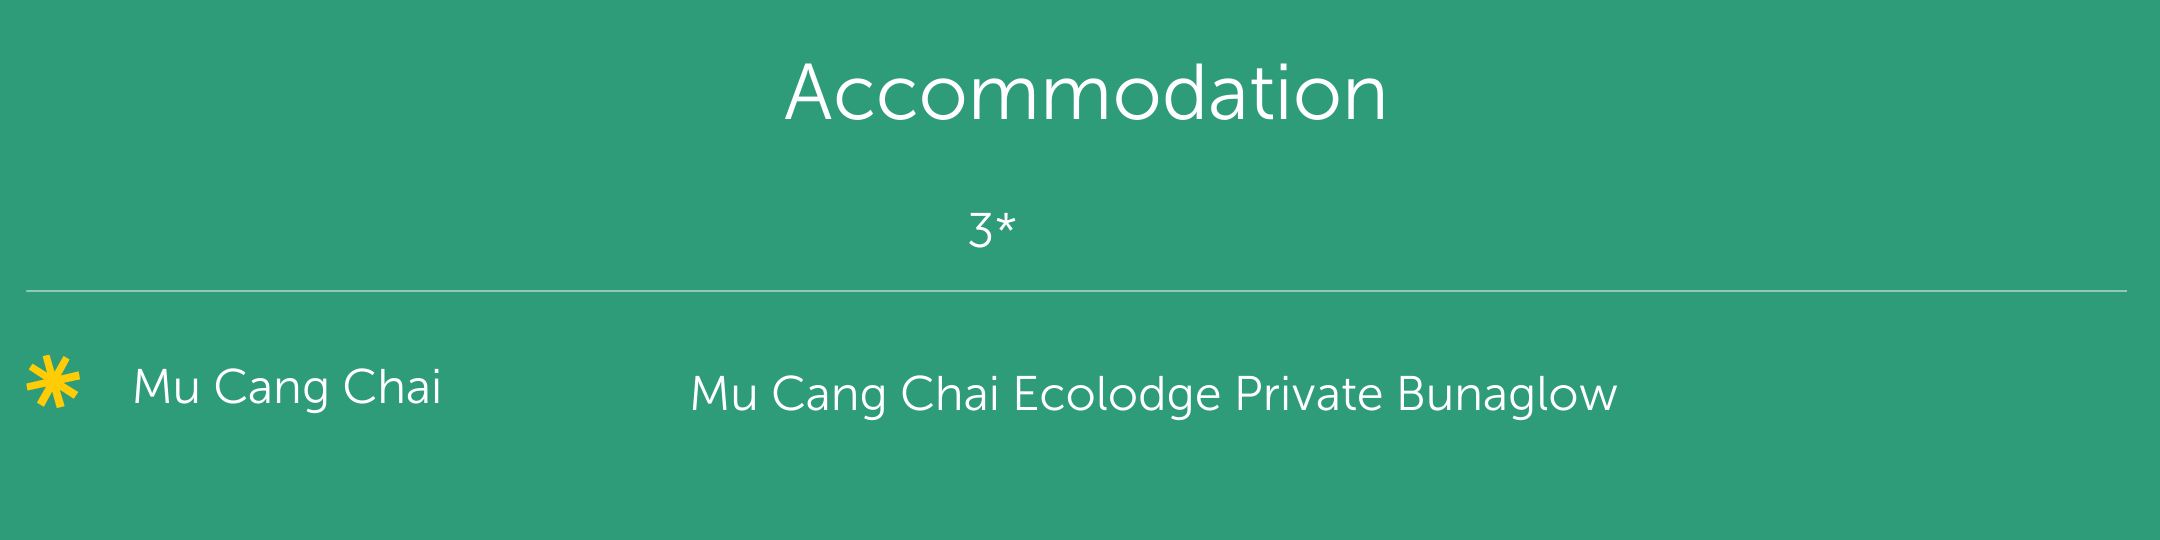 Mu Cang Chai 2 day tour accommodation